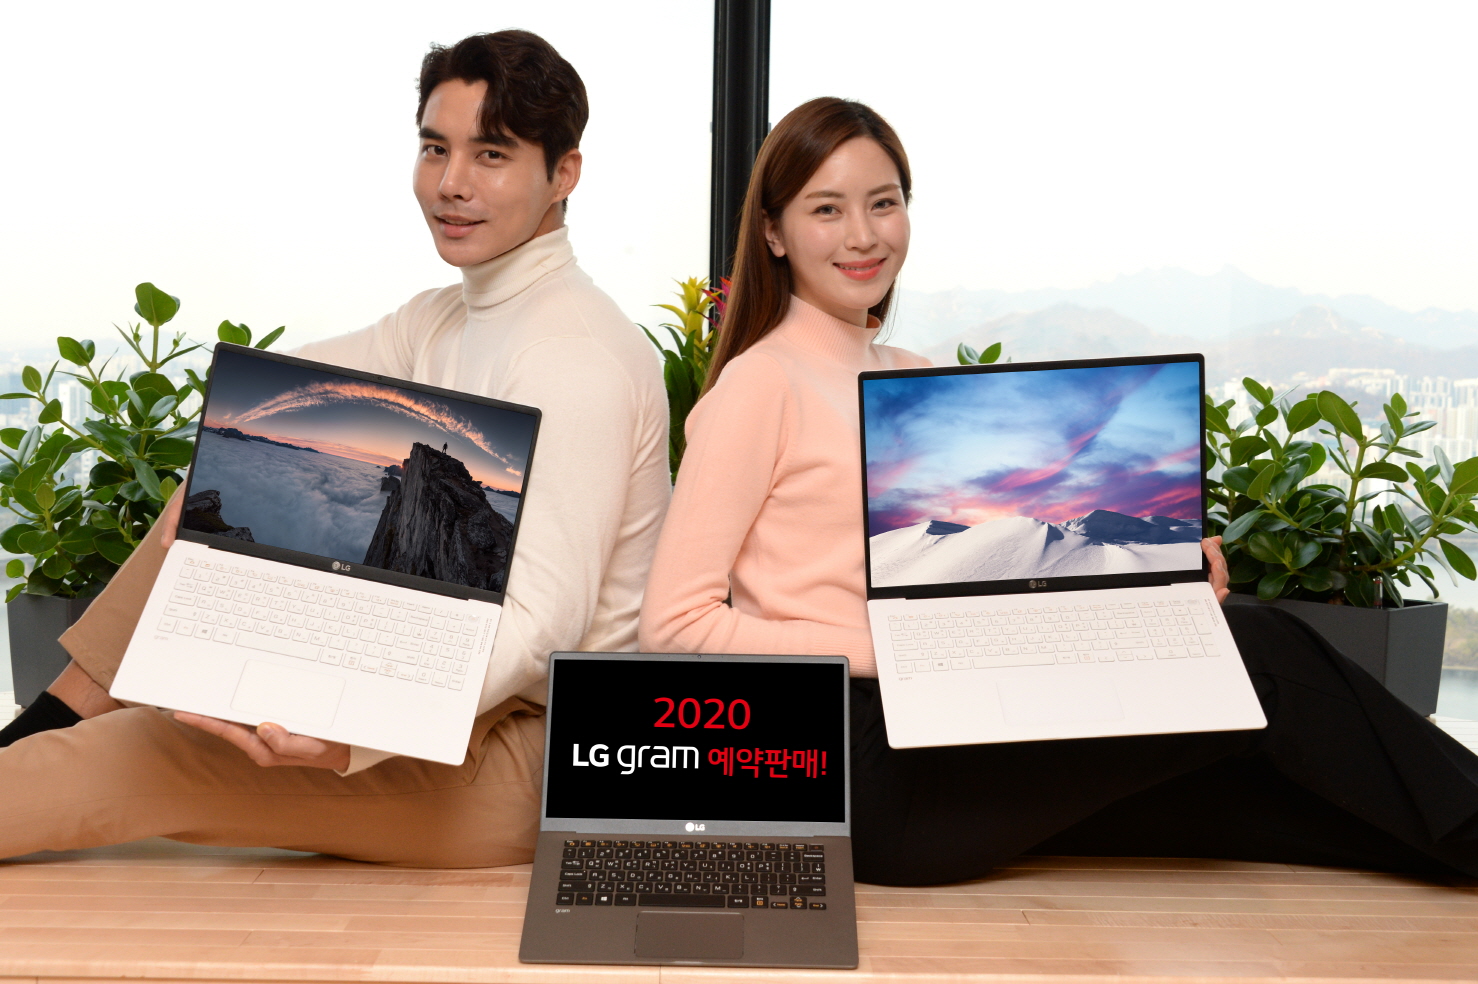 서울 여의도 소재 LG 트윈타워에서 모델들이 대화면, 고성능, 휴대성까지 겸비한 2020년형 'LG 그램' 신제품을 소개하고 있다. 왼쪽 제품부터 'LG 그램 15', 'LG 그램 14', 'LG 그램 17' 제품순임.